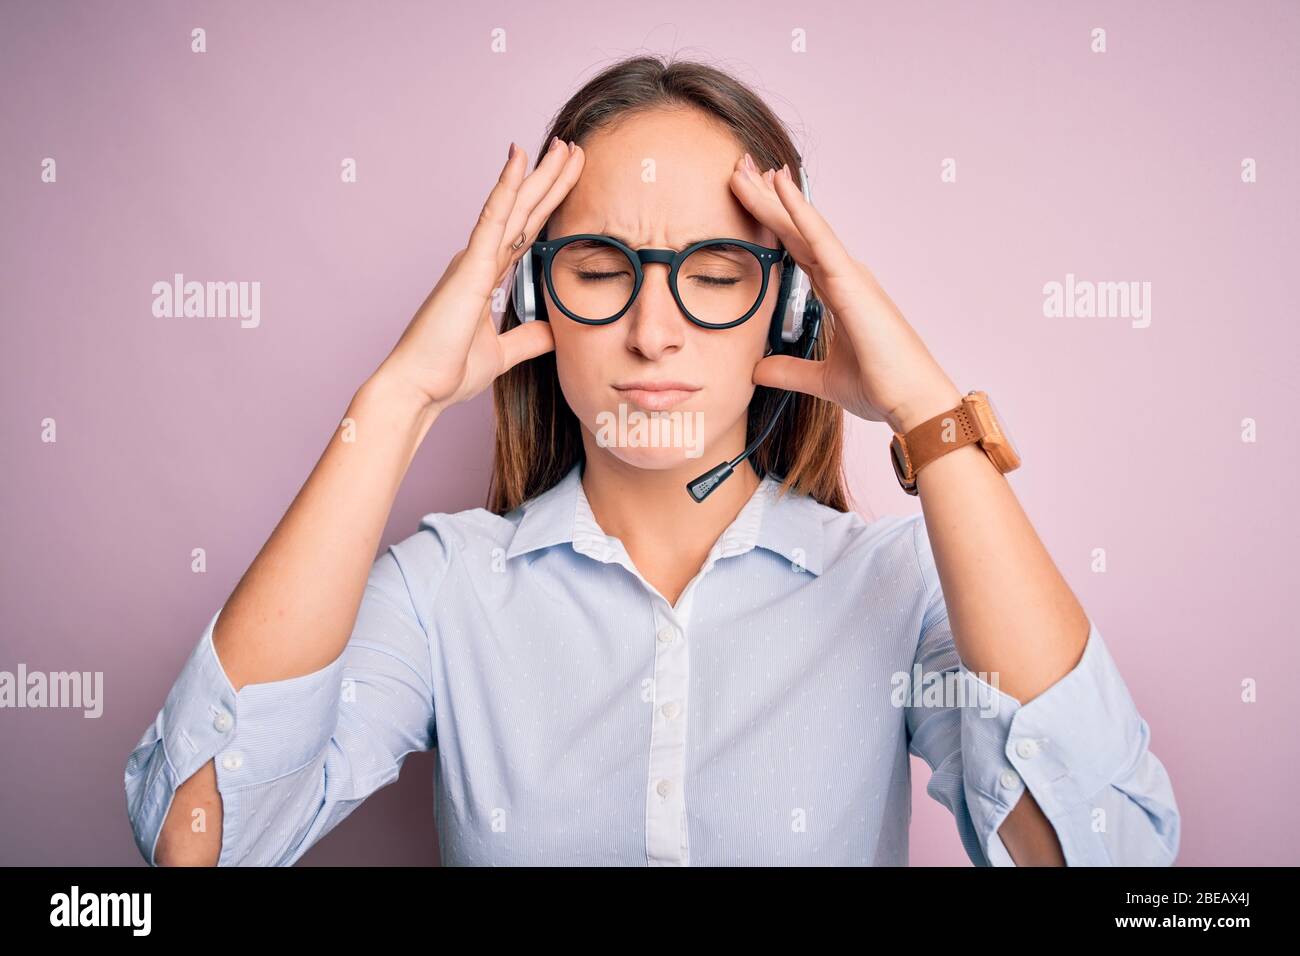 Junge schöne Call-Center-Agent Frau trägt Brille mit Headset arbeiten unter  Kopfschmerzen verzweifelt und gestresst, weil Schmerzen und Migräne  Stockfotografie - Alamy